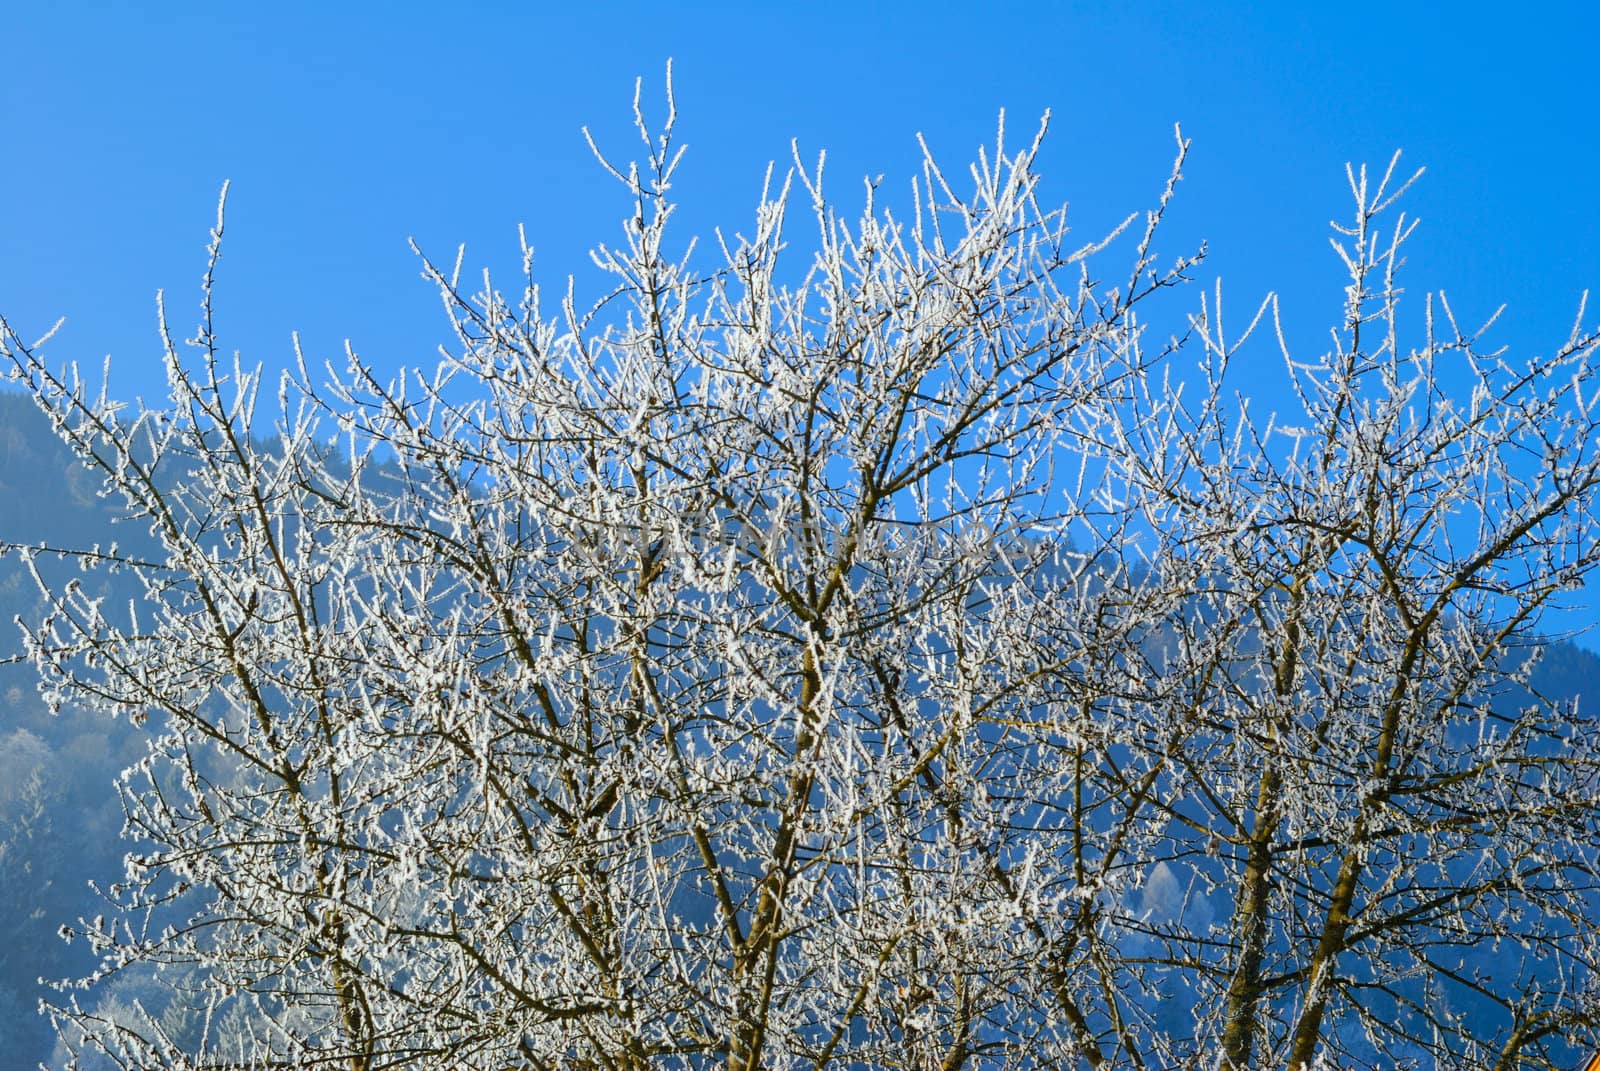 Frost on trees in austrian winter